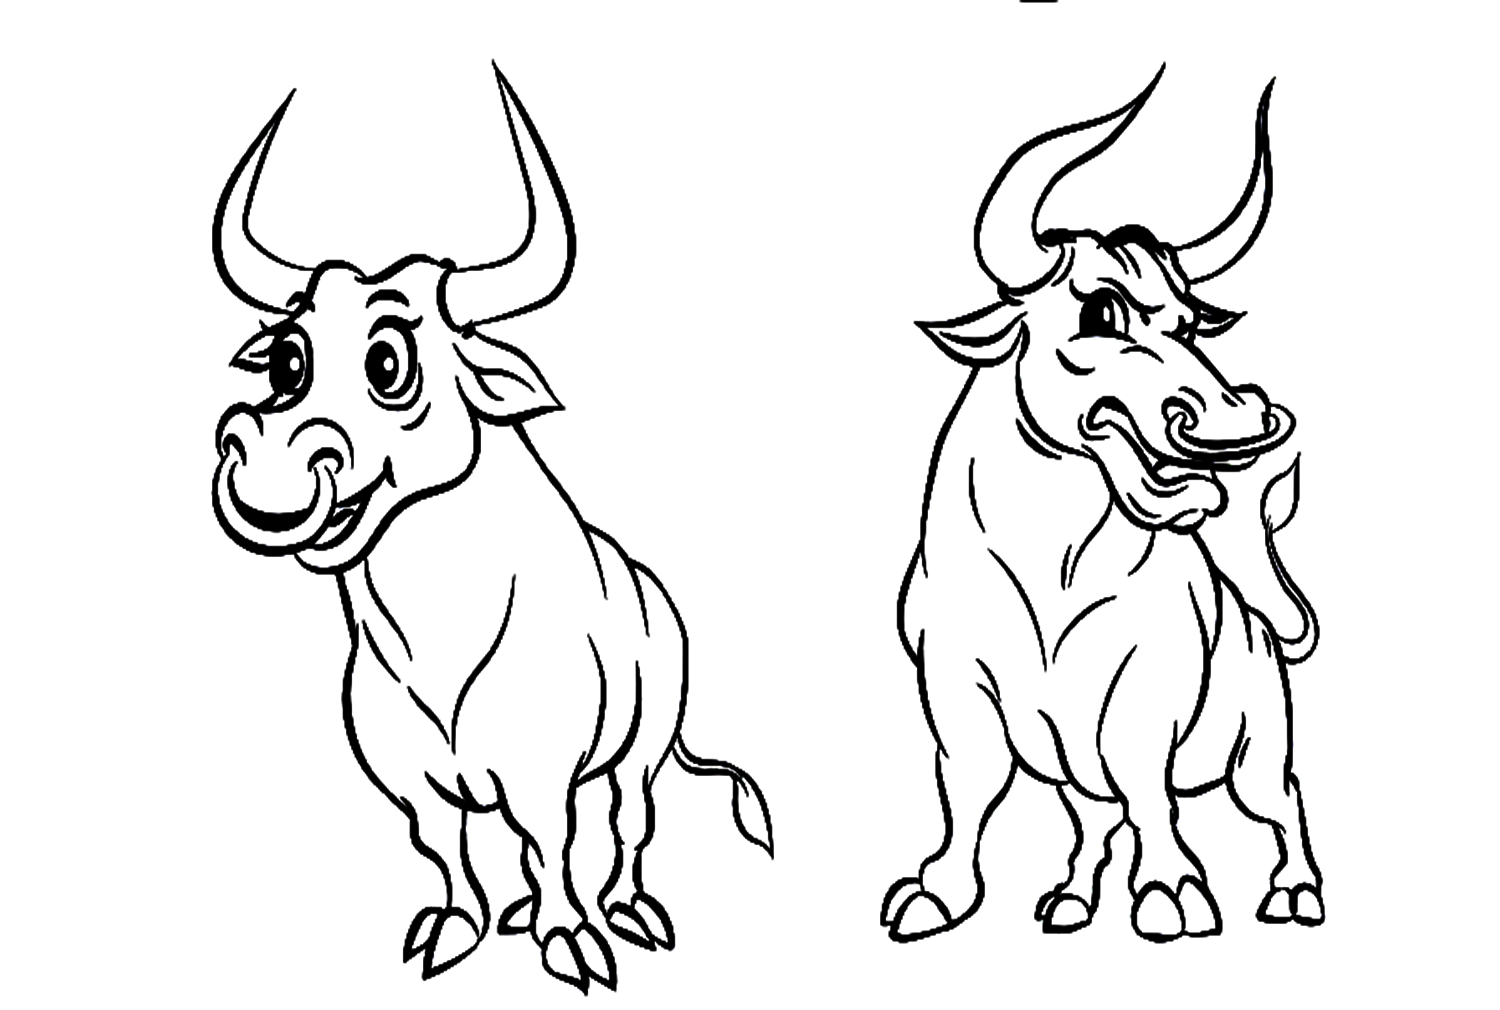 Twee stieren van Bull